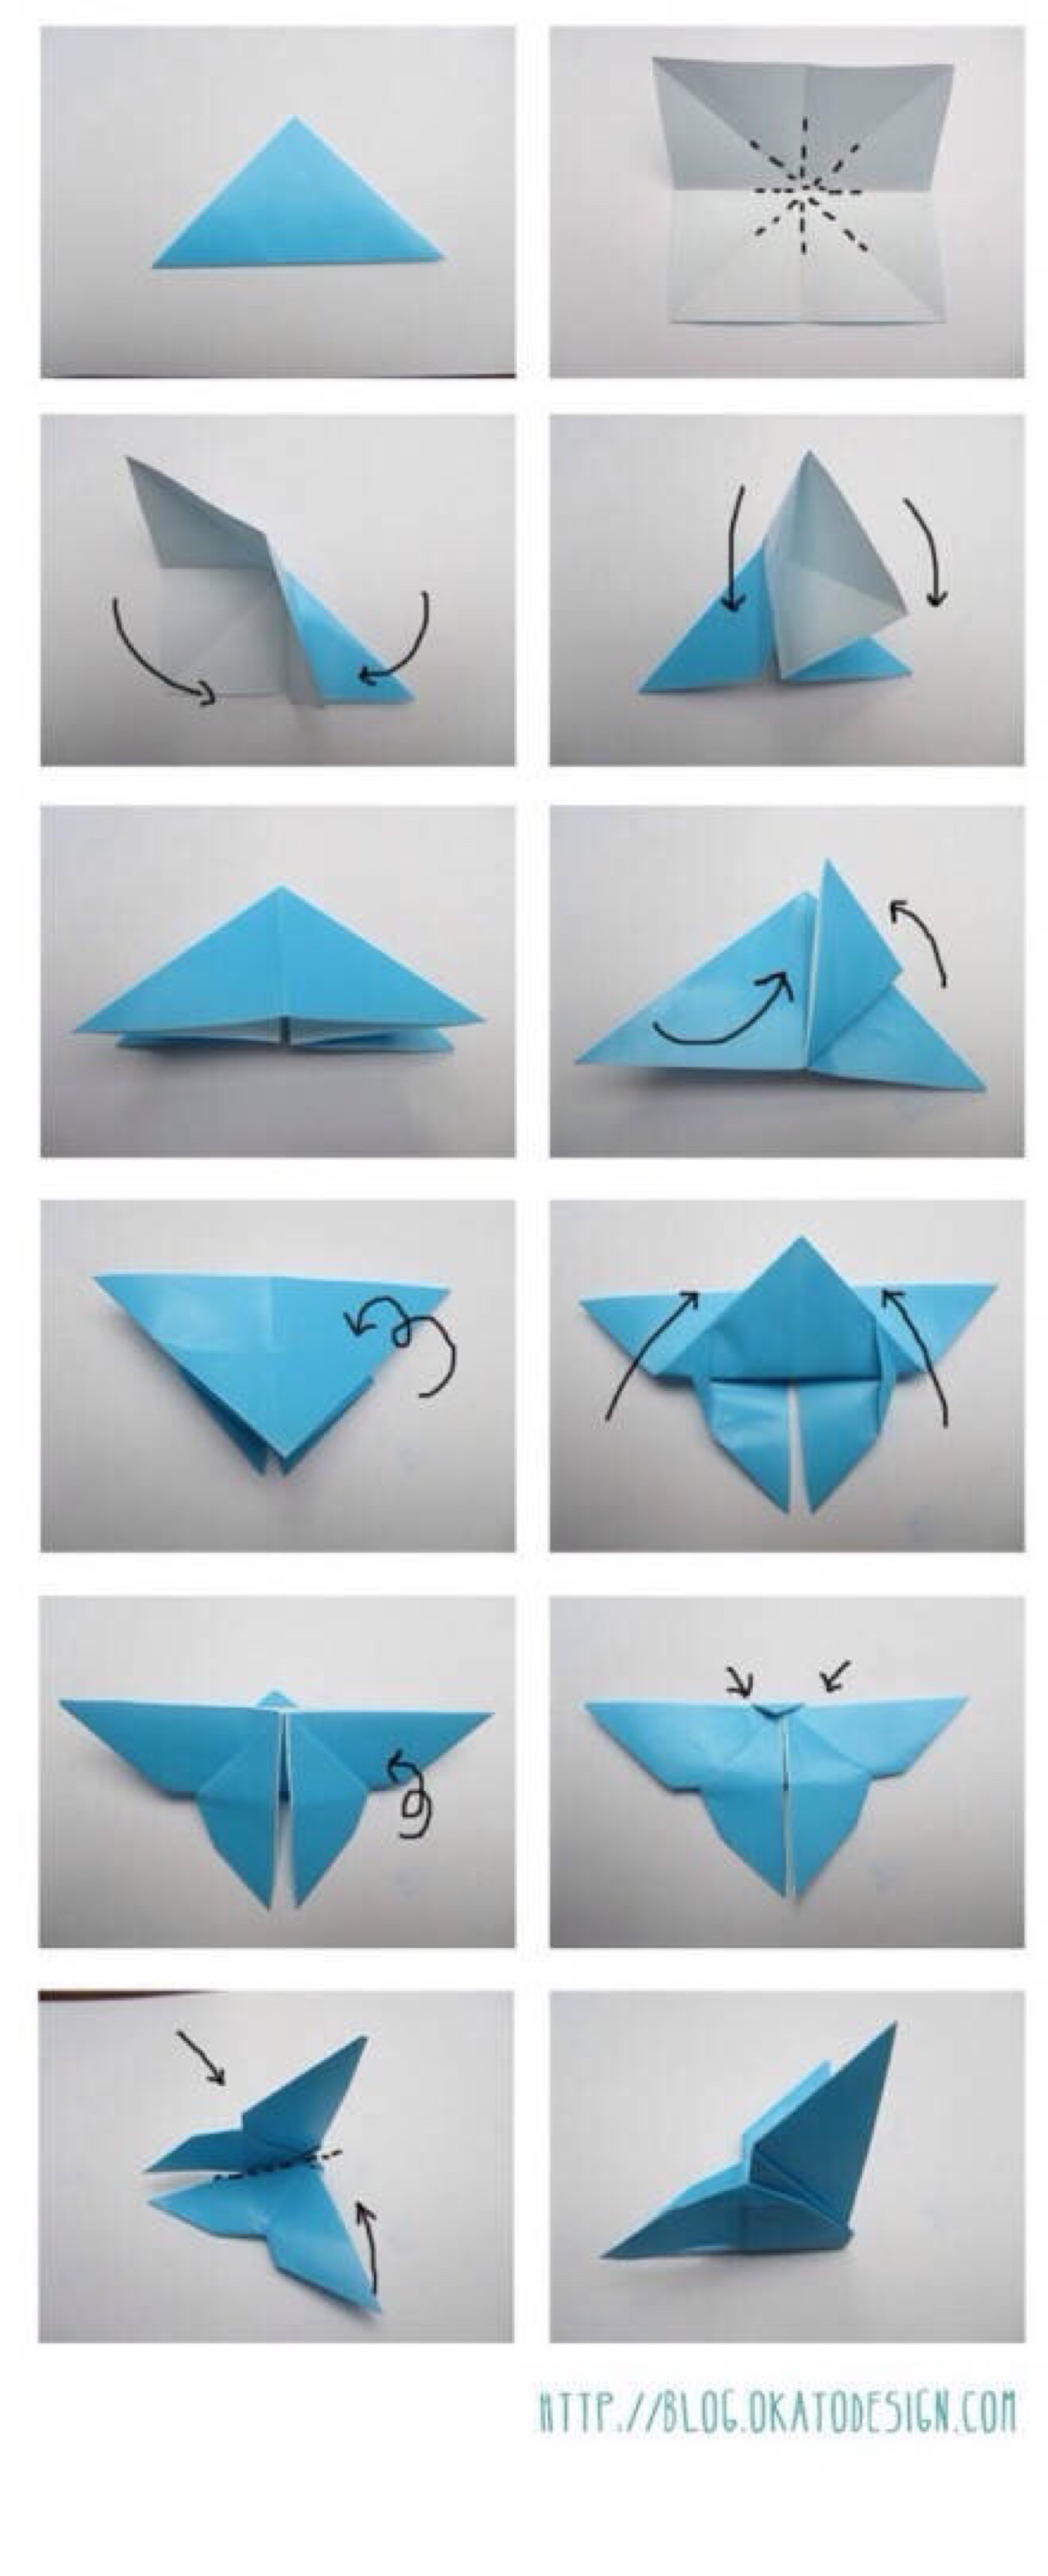 蝴蝶手工折纸简单图片